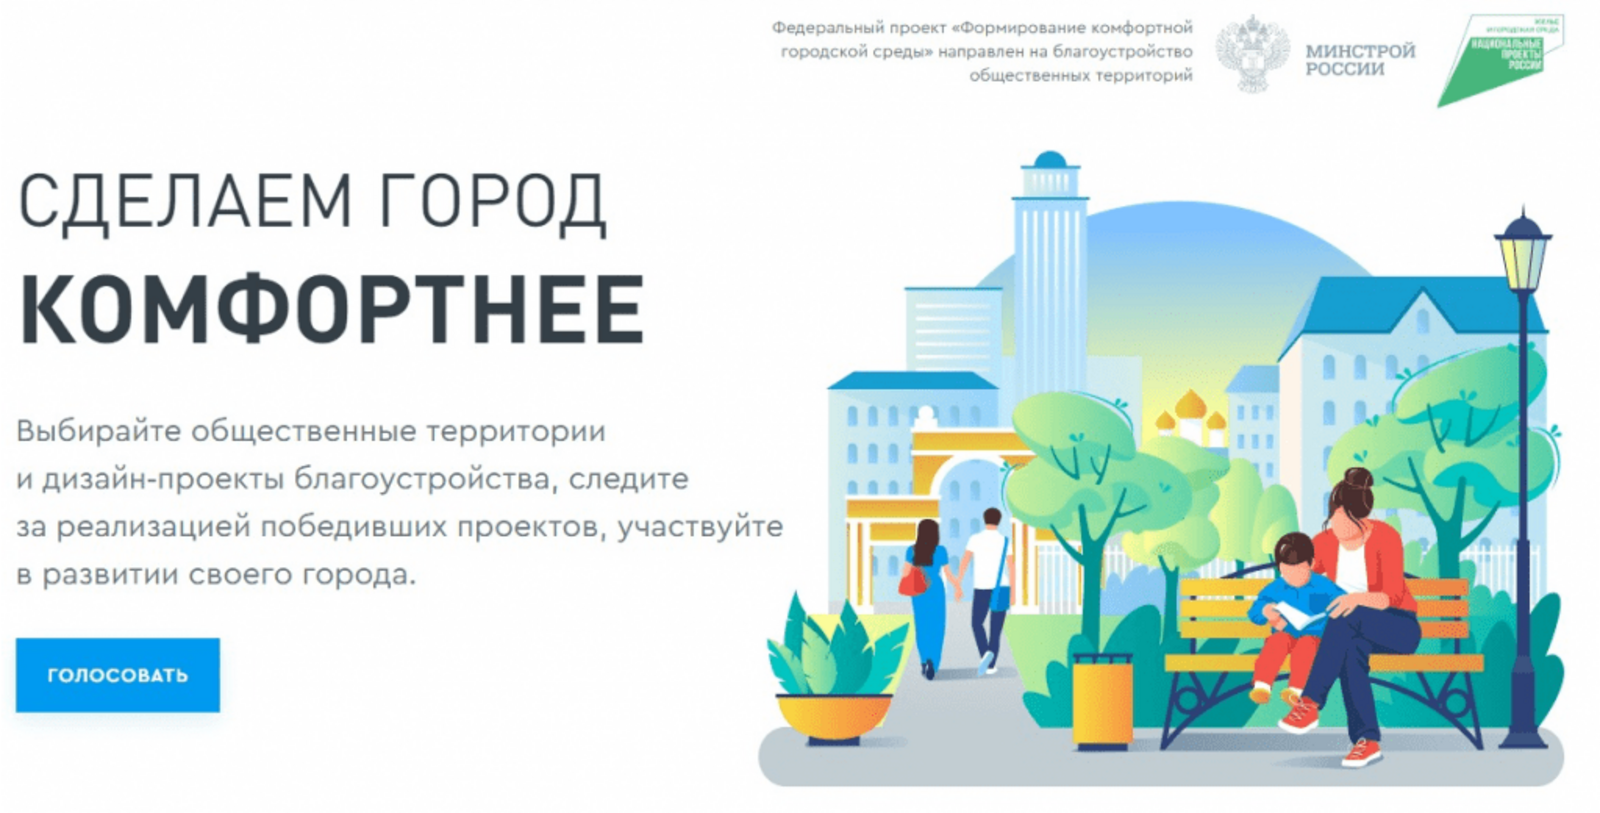 Начинается второе Всероссийское онлайн-голосование по выбору объектов по отбору общественных территорий для благоустройства